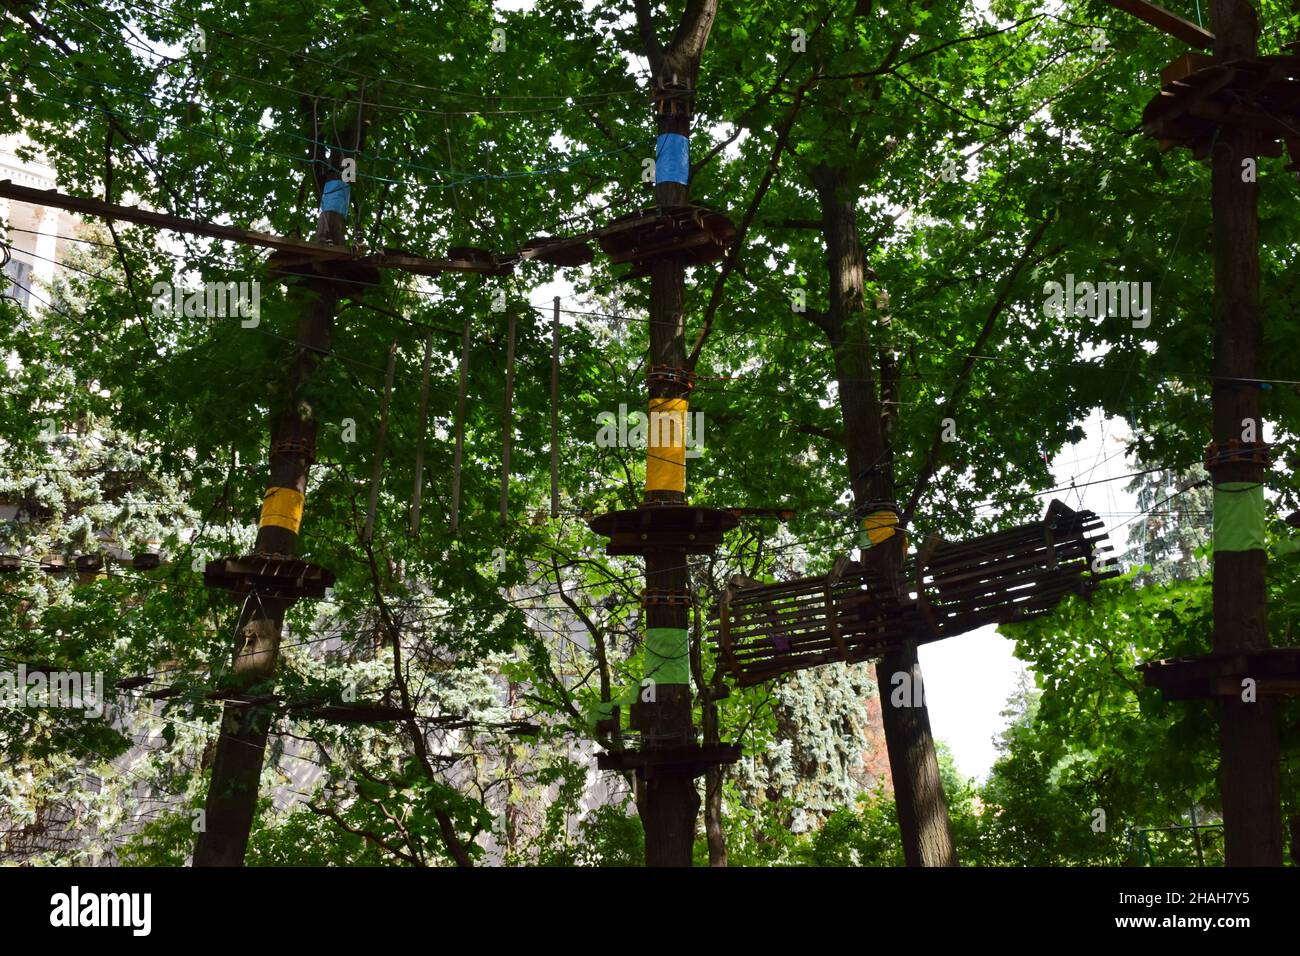 Im Sommerwald, ein Sport-Seilpark Unterhaltung mit Hängebrücken, Übergänge zwischen Bäumen gebunden Stockfoto